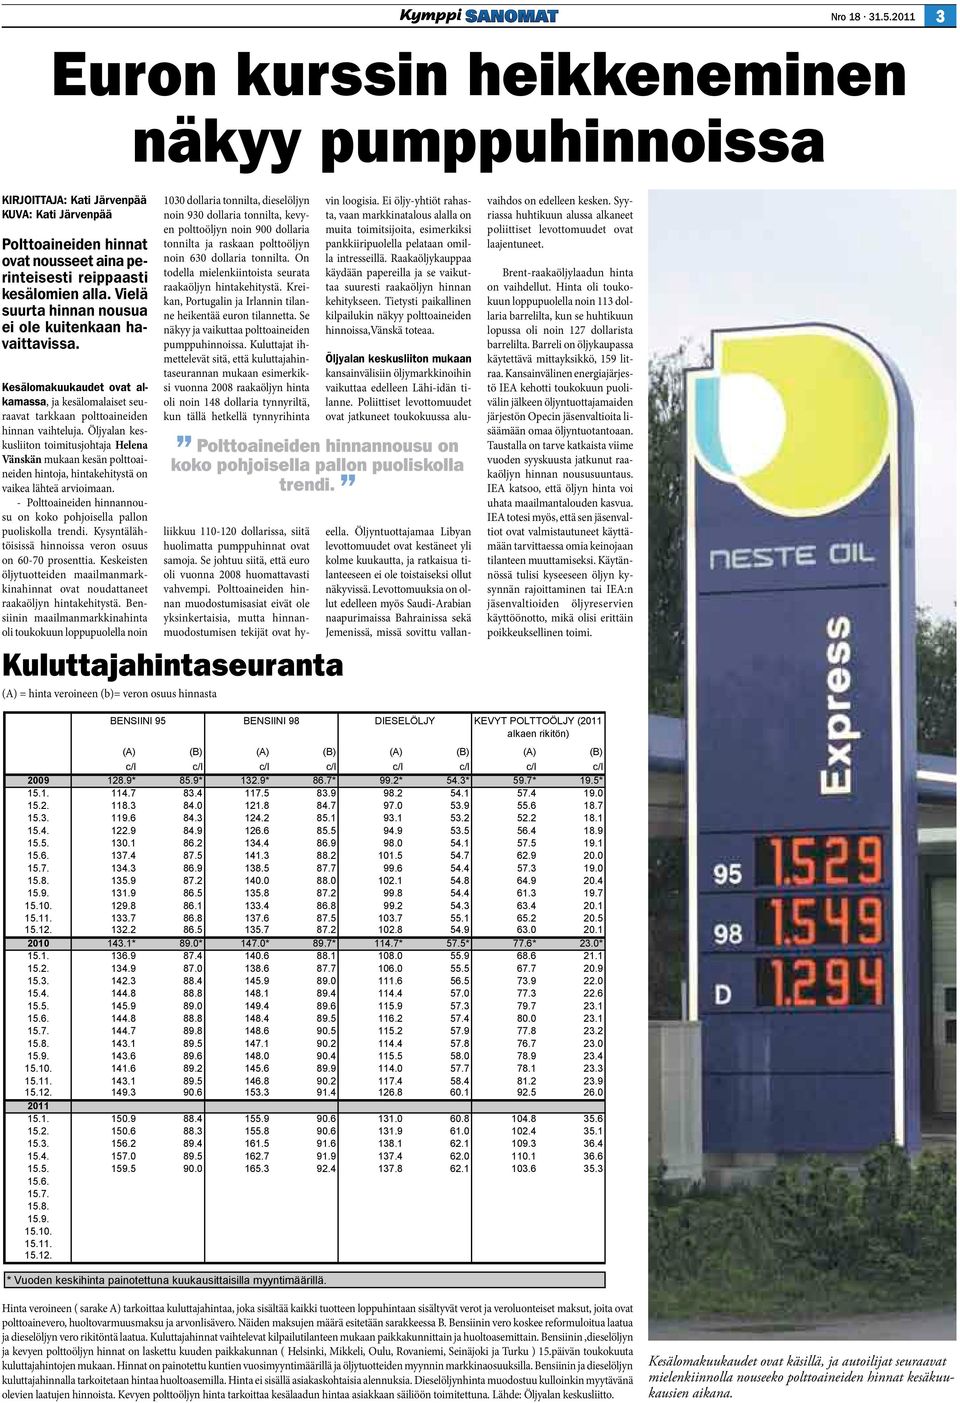 Öljyalan keskusliiton toimitusjohtaja Helena Vänskän mukaan kesän polttoaineiden hintoja, hintakehitystä on vaikea lähteä arvioimaan.